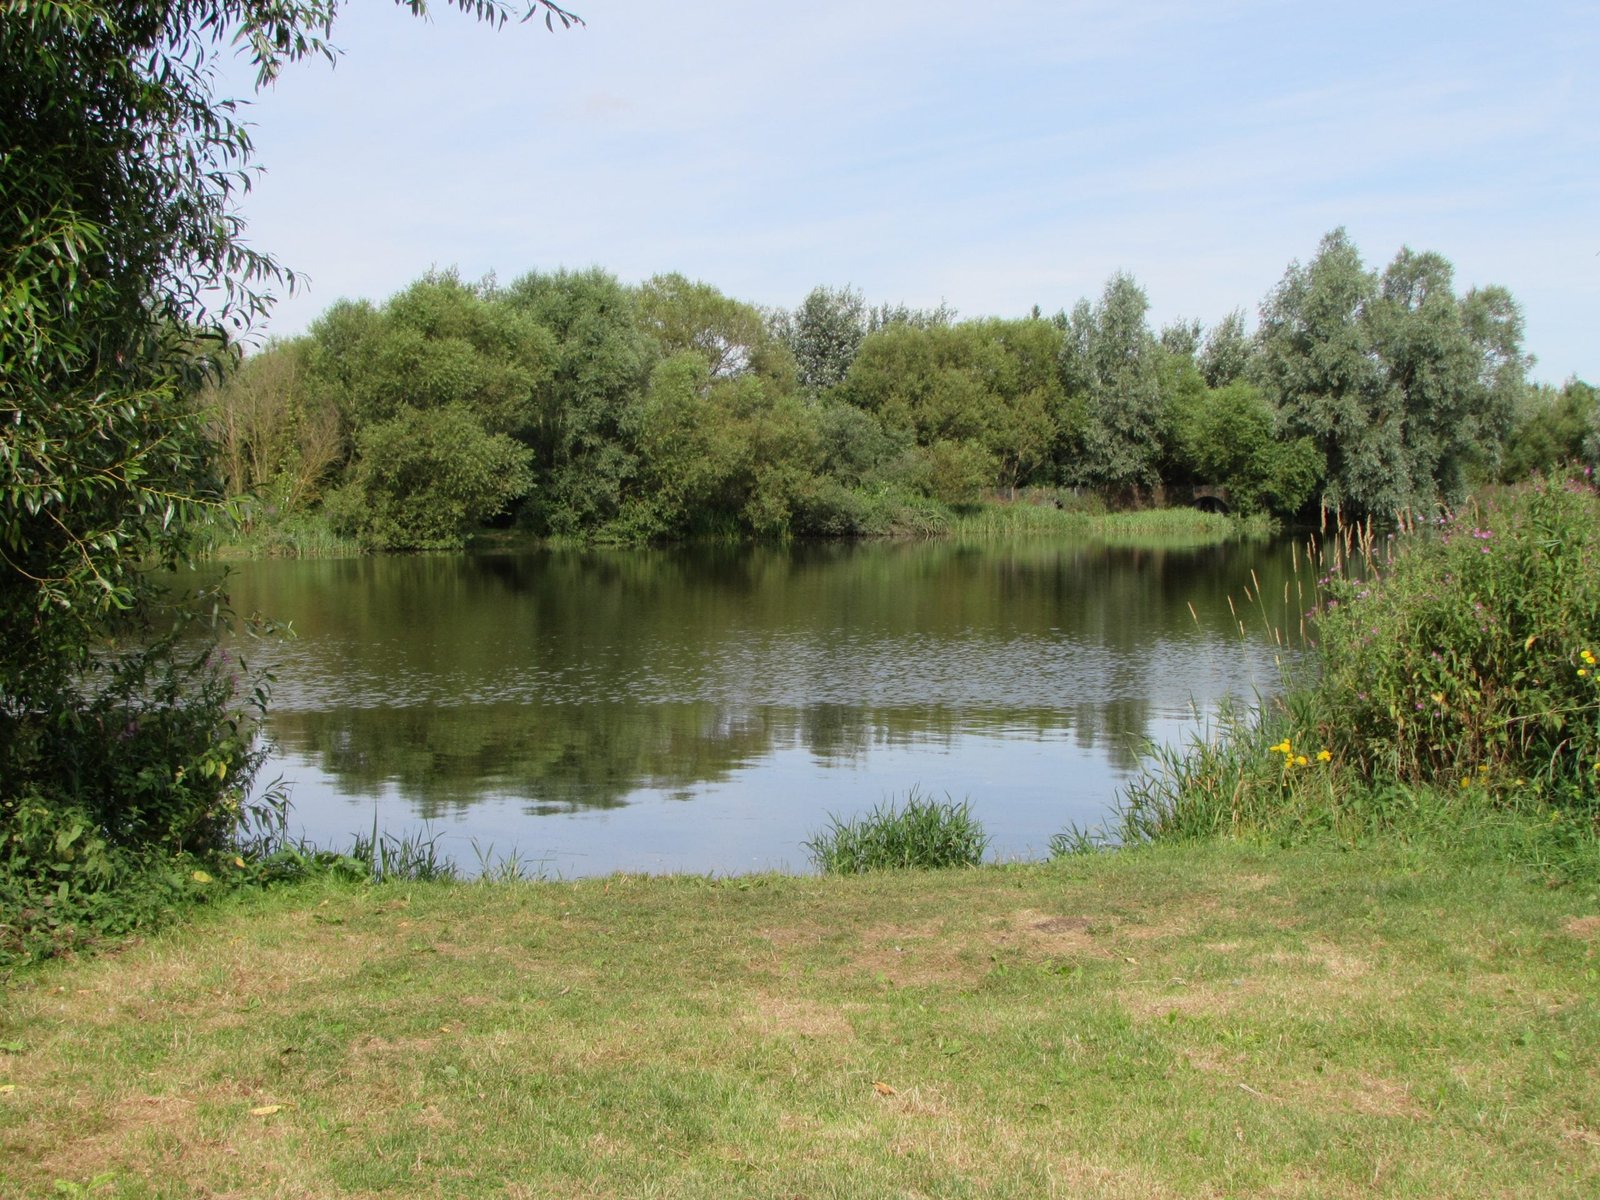 Gallery image of Meadows Lake, Ongar UK